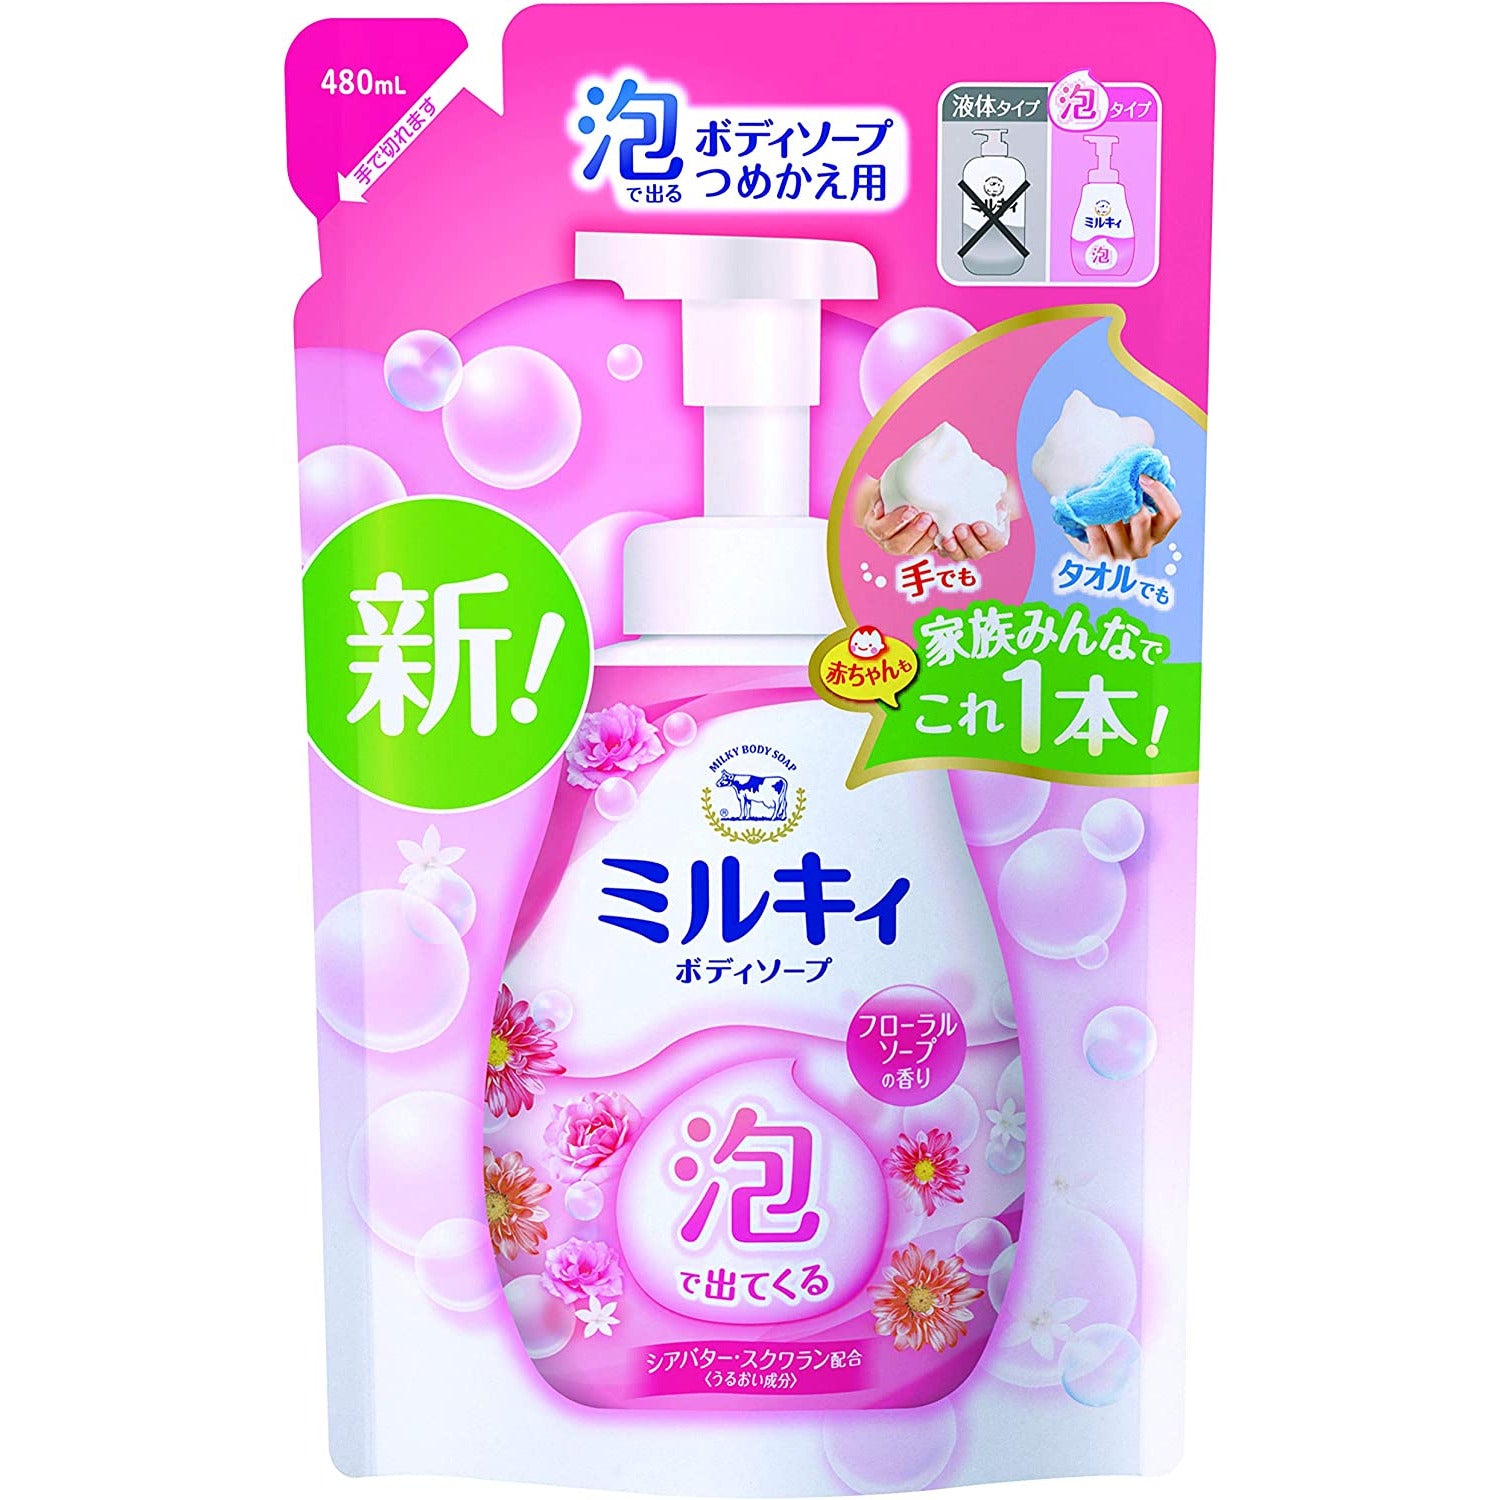 COW Milky Foam Body Soap Floral Soap Fragrance Refill 480ml